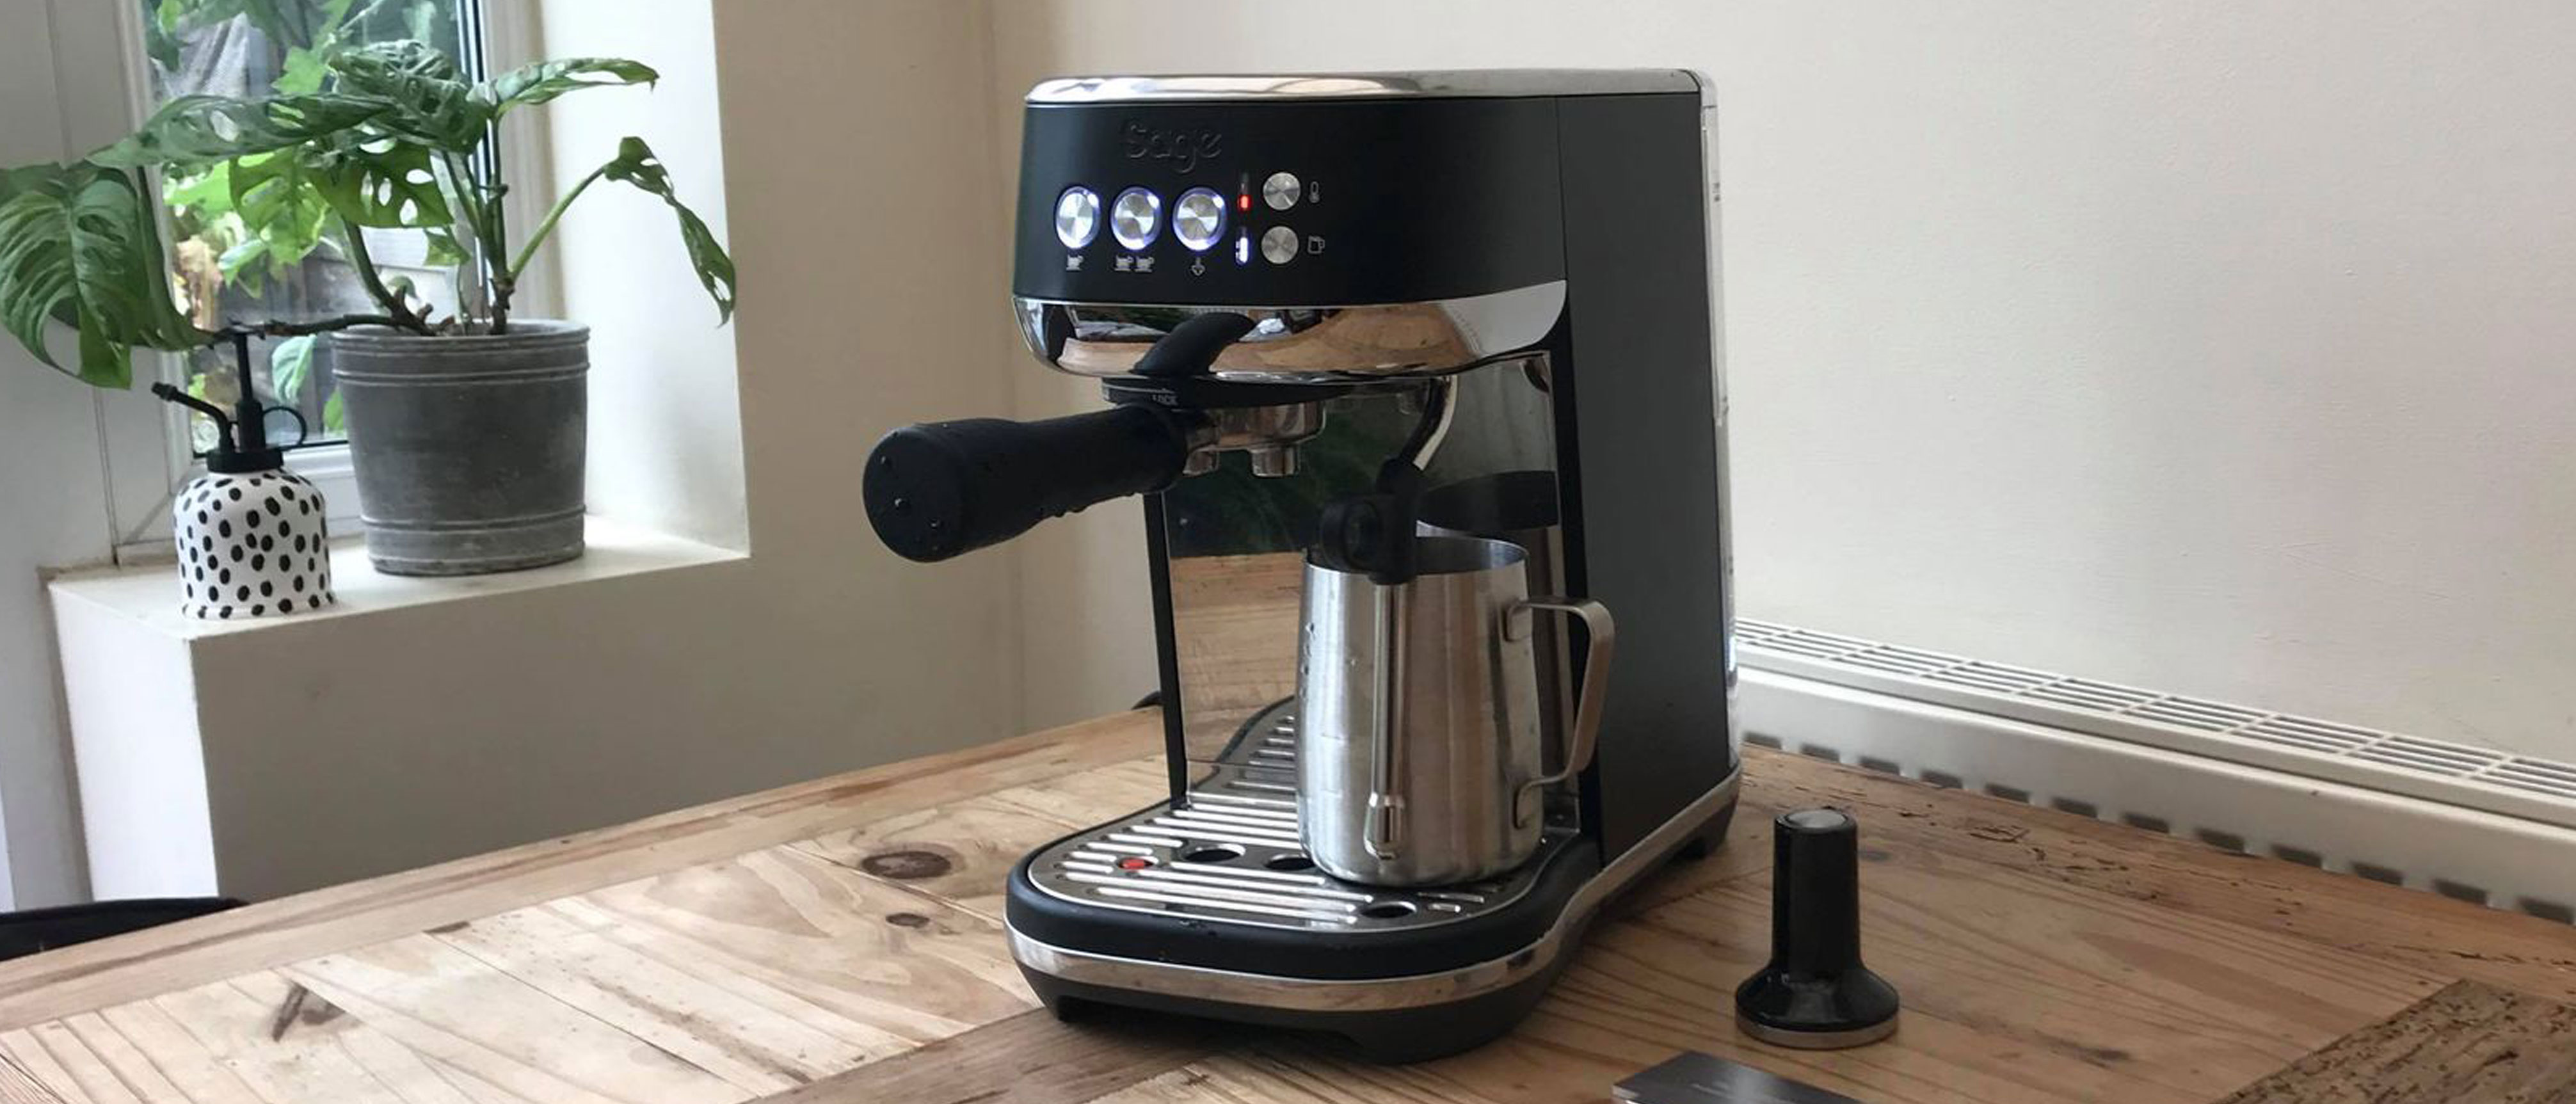 Breville Bambino Plus Home Espresso Machine Review & Test 